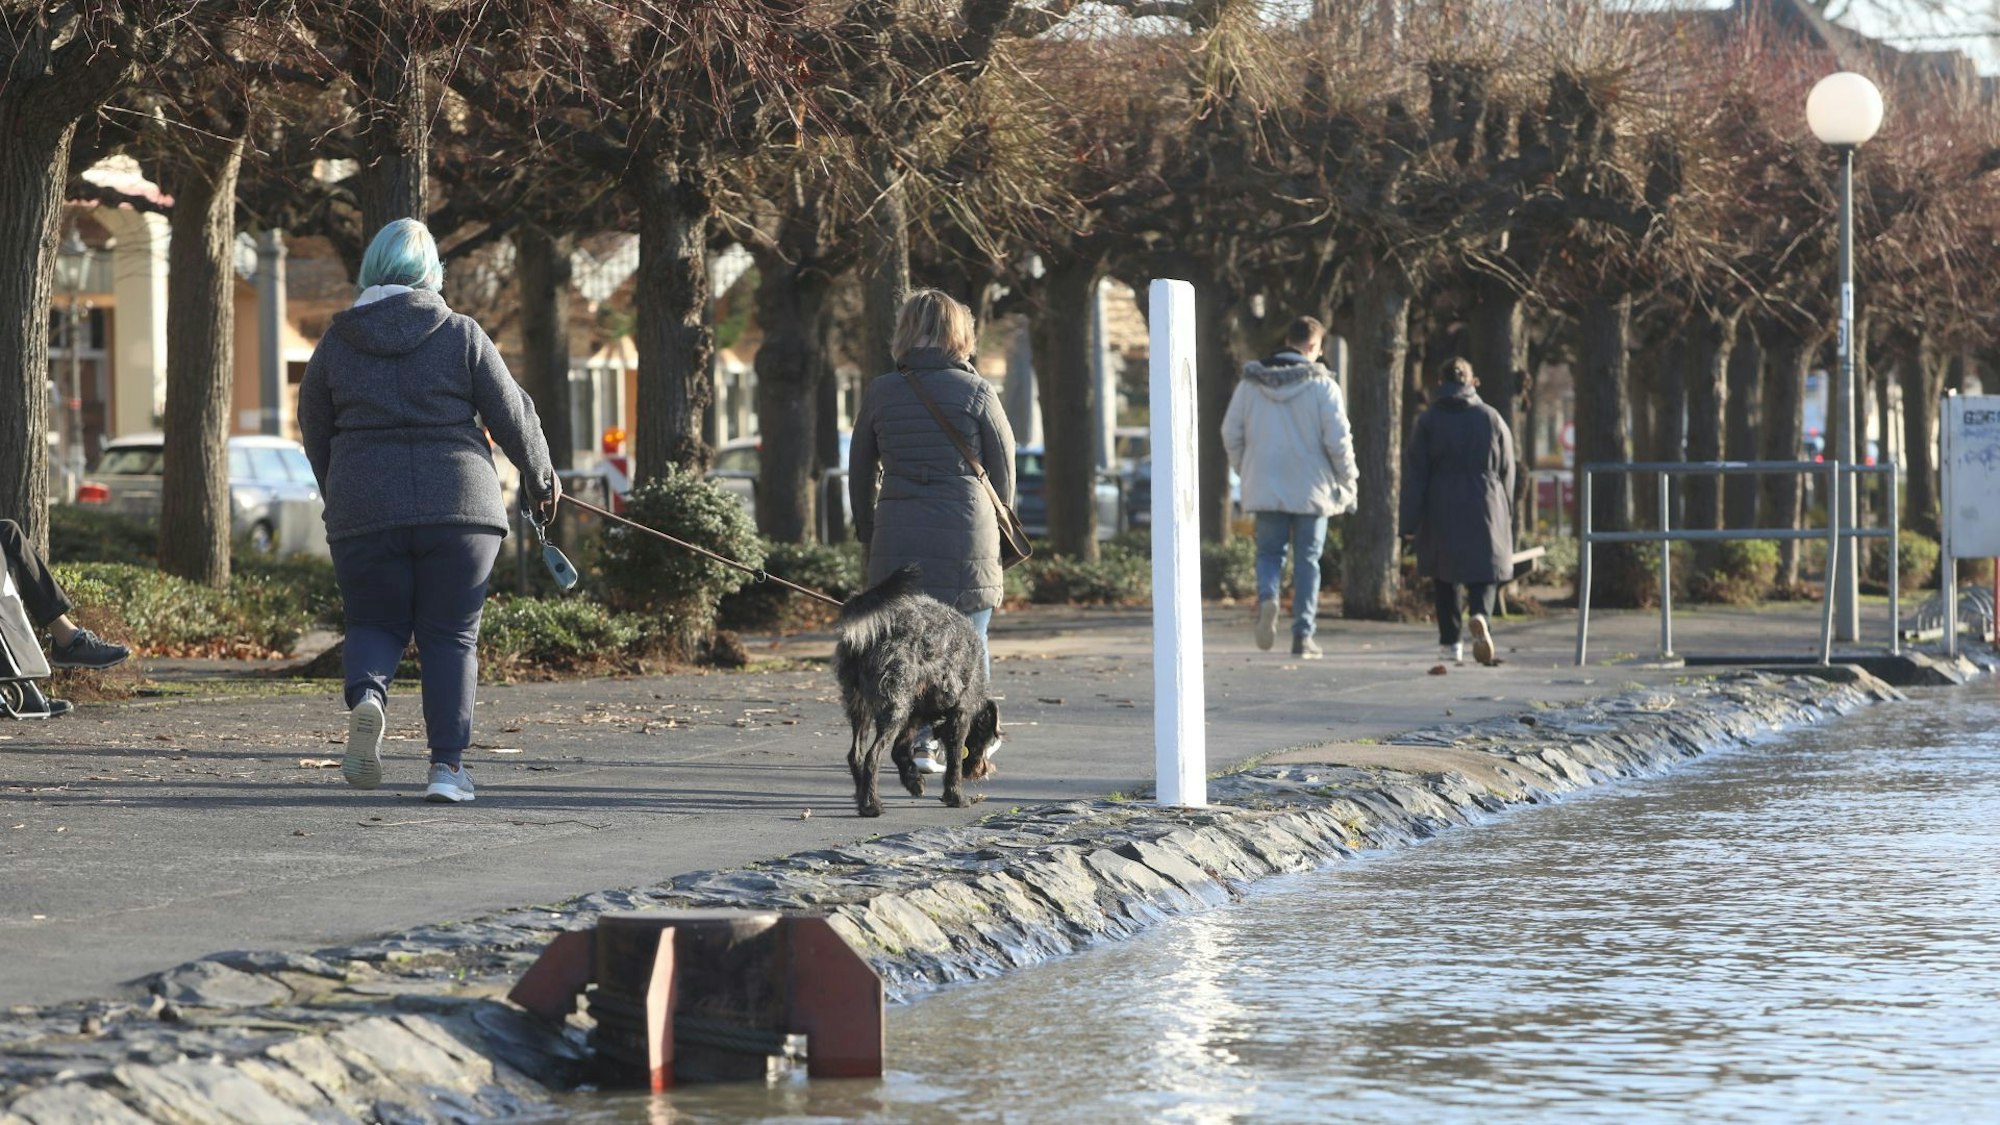 Spaziergänger auf einer Uferpromenade. Das Wasser steht nur wenige Zentimeter unterhalb des Weges.